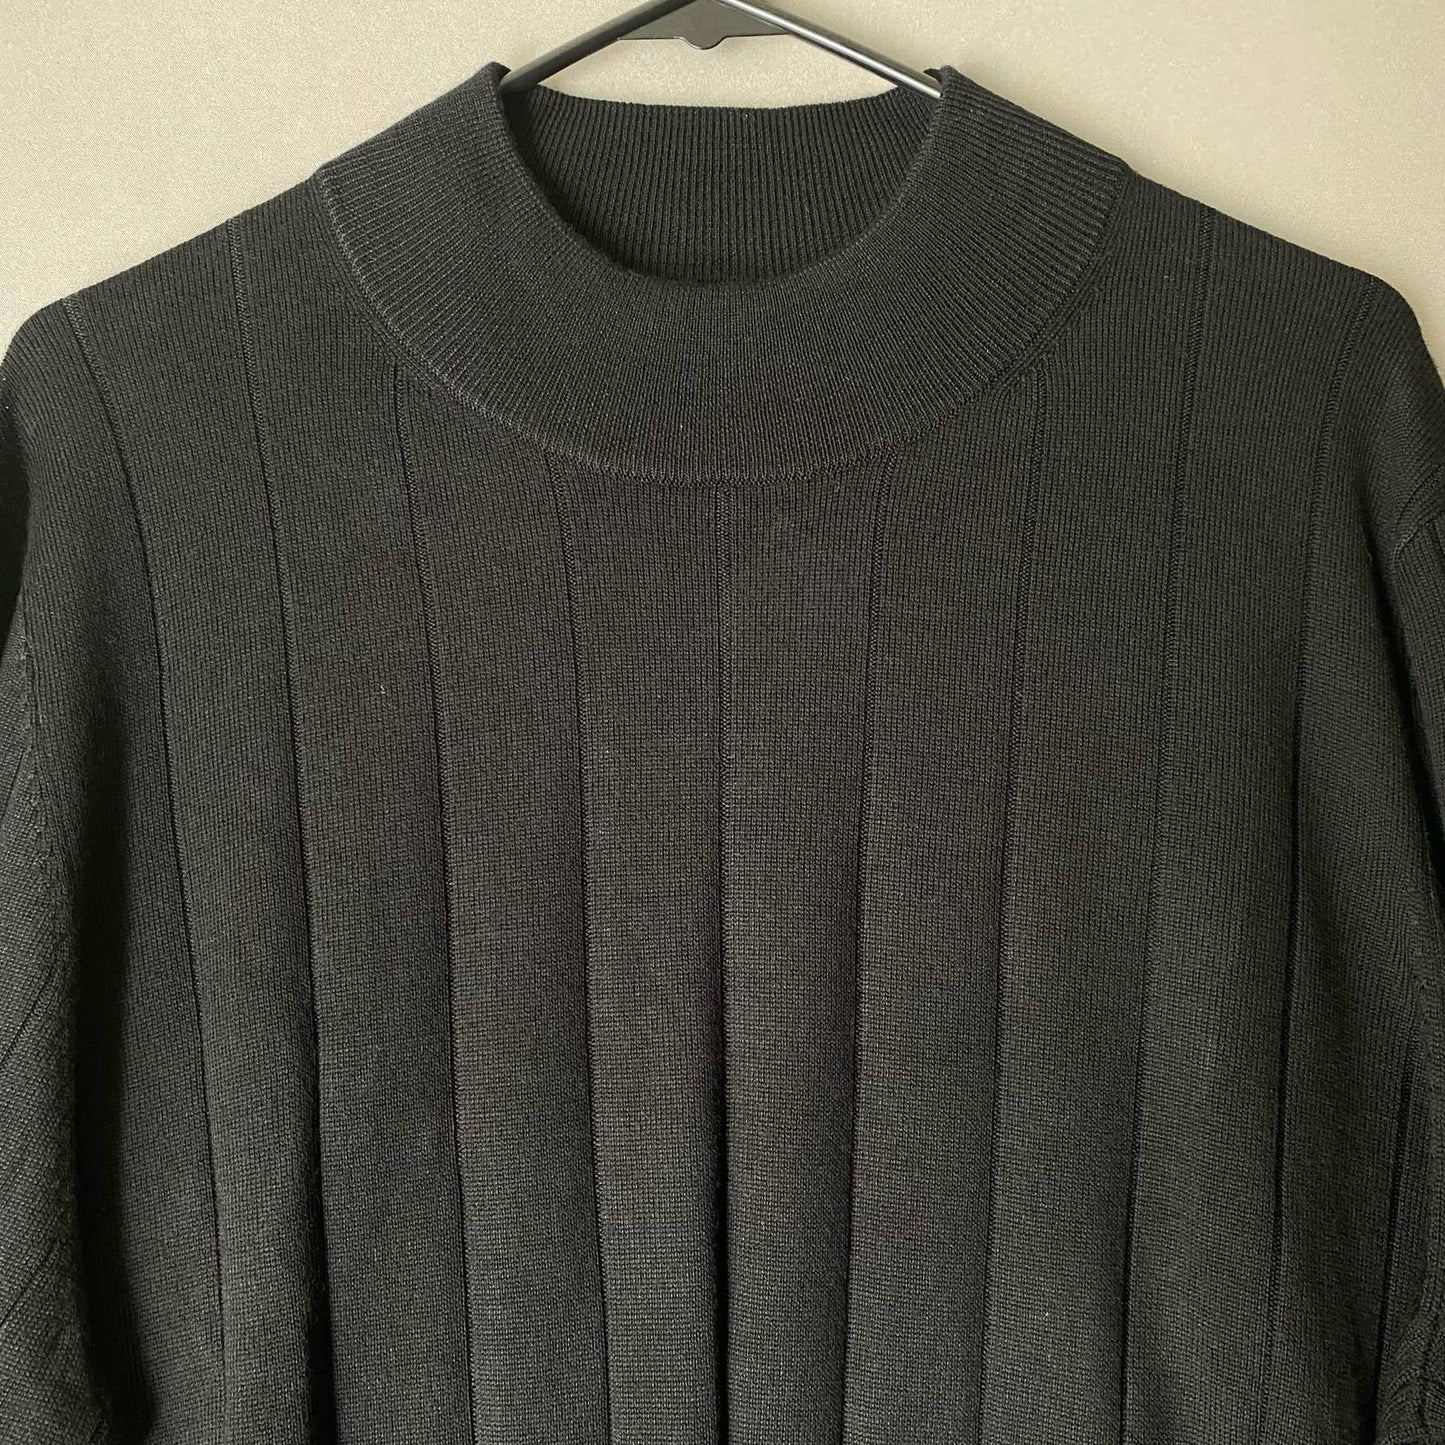 Joseph Abound sz XXL 100% merino wool sweater NWT